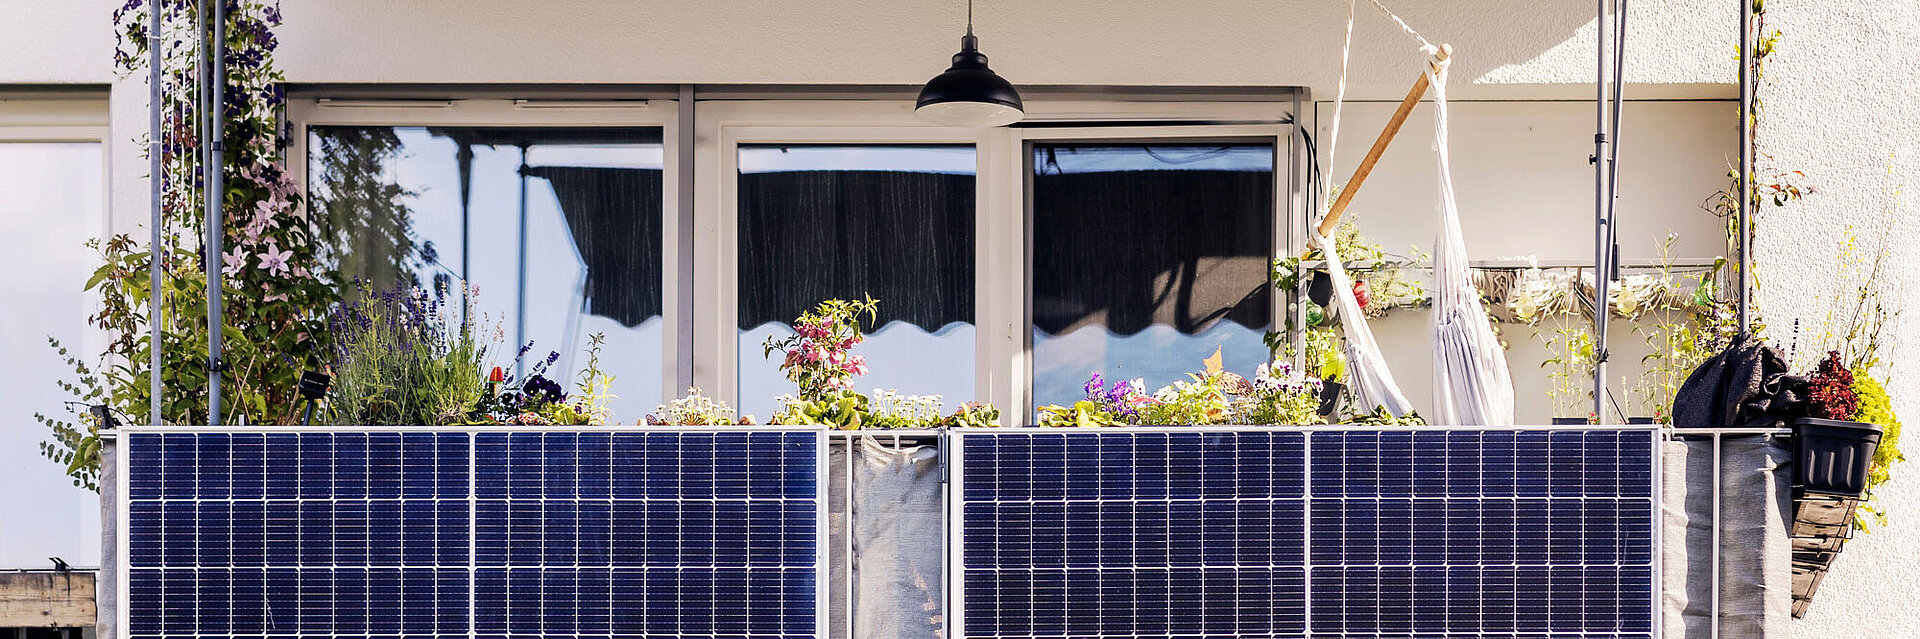 Mini-Photovoltaik-Anlage am Balkon